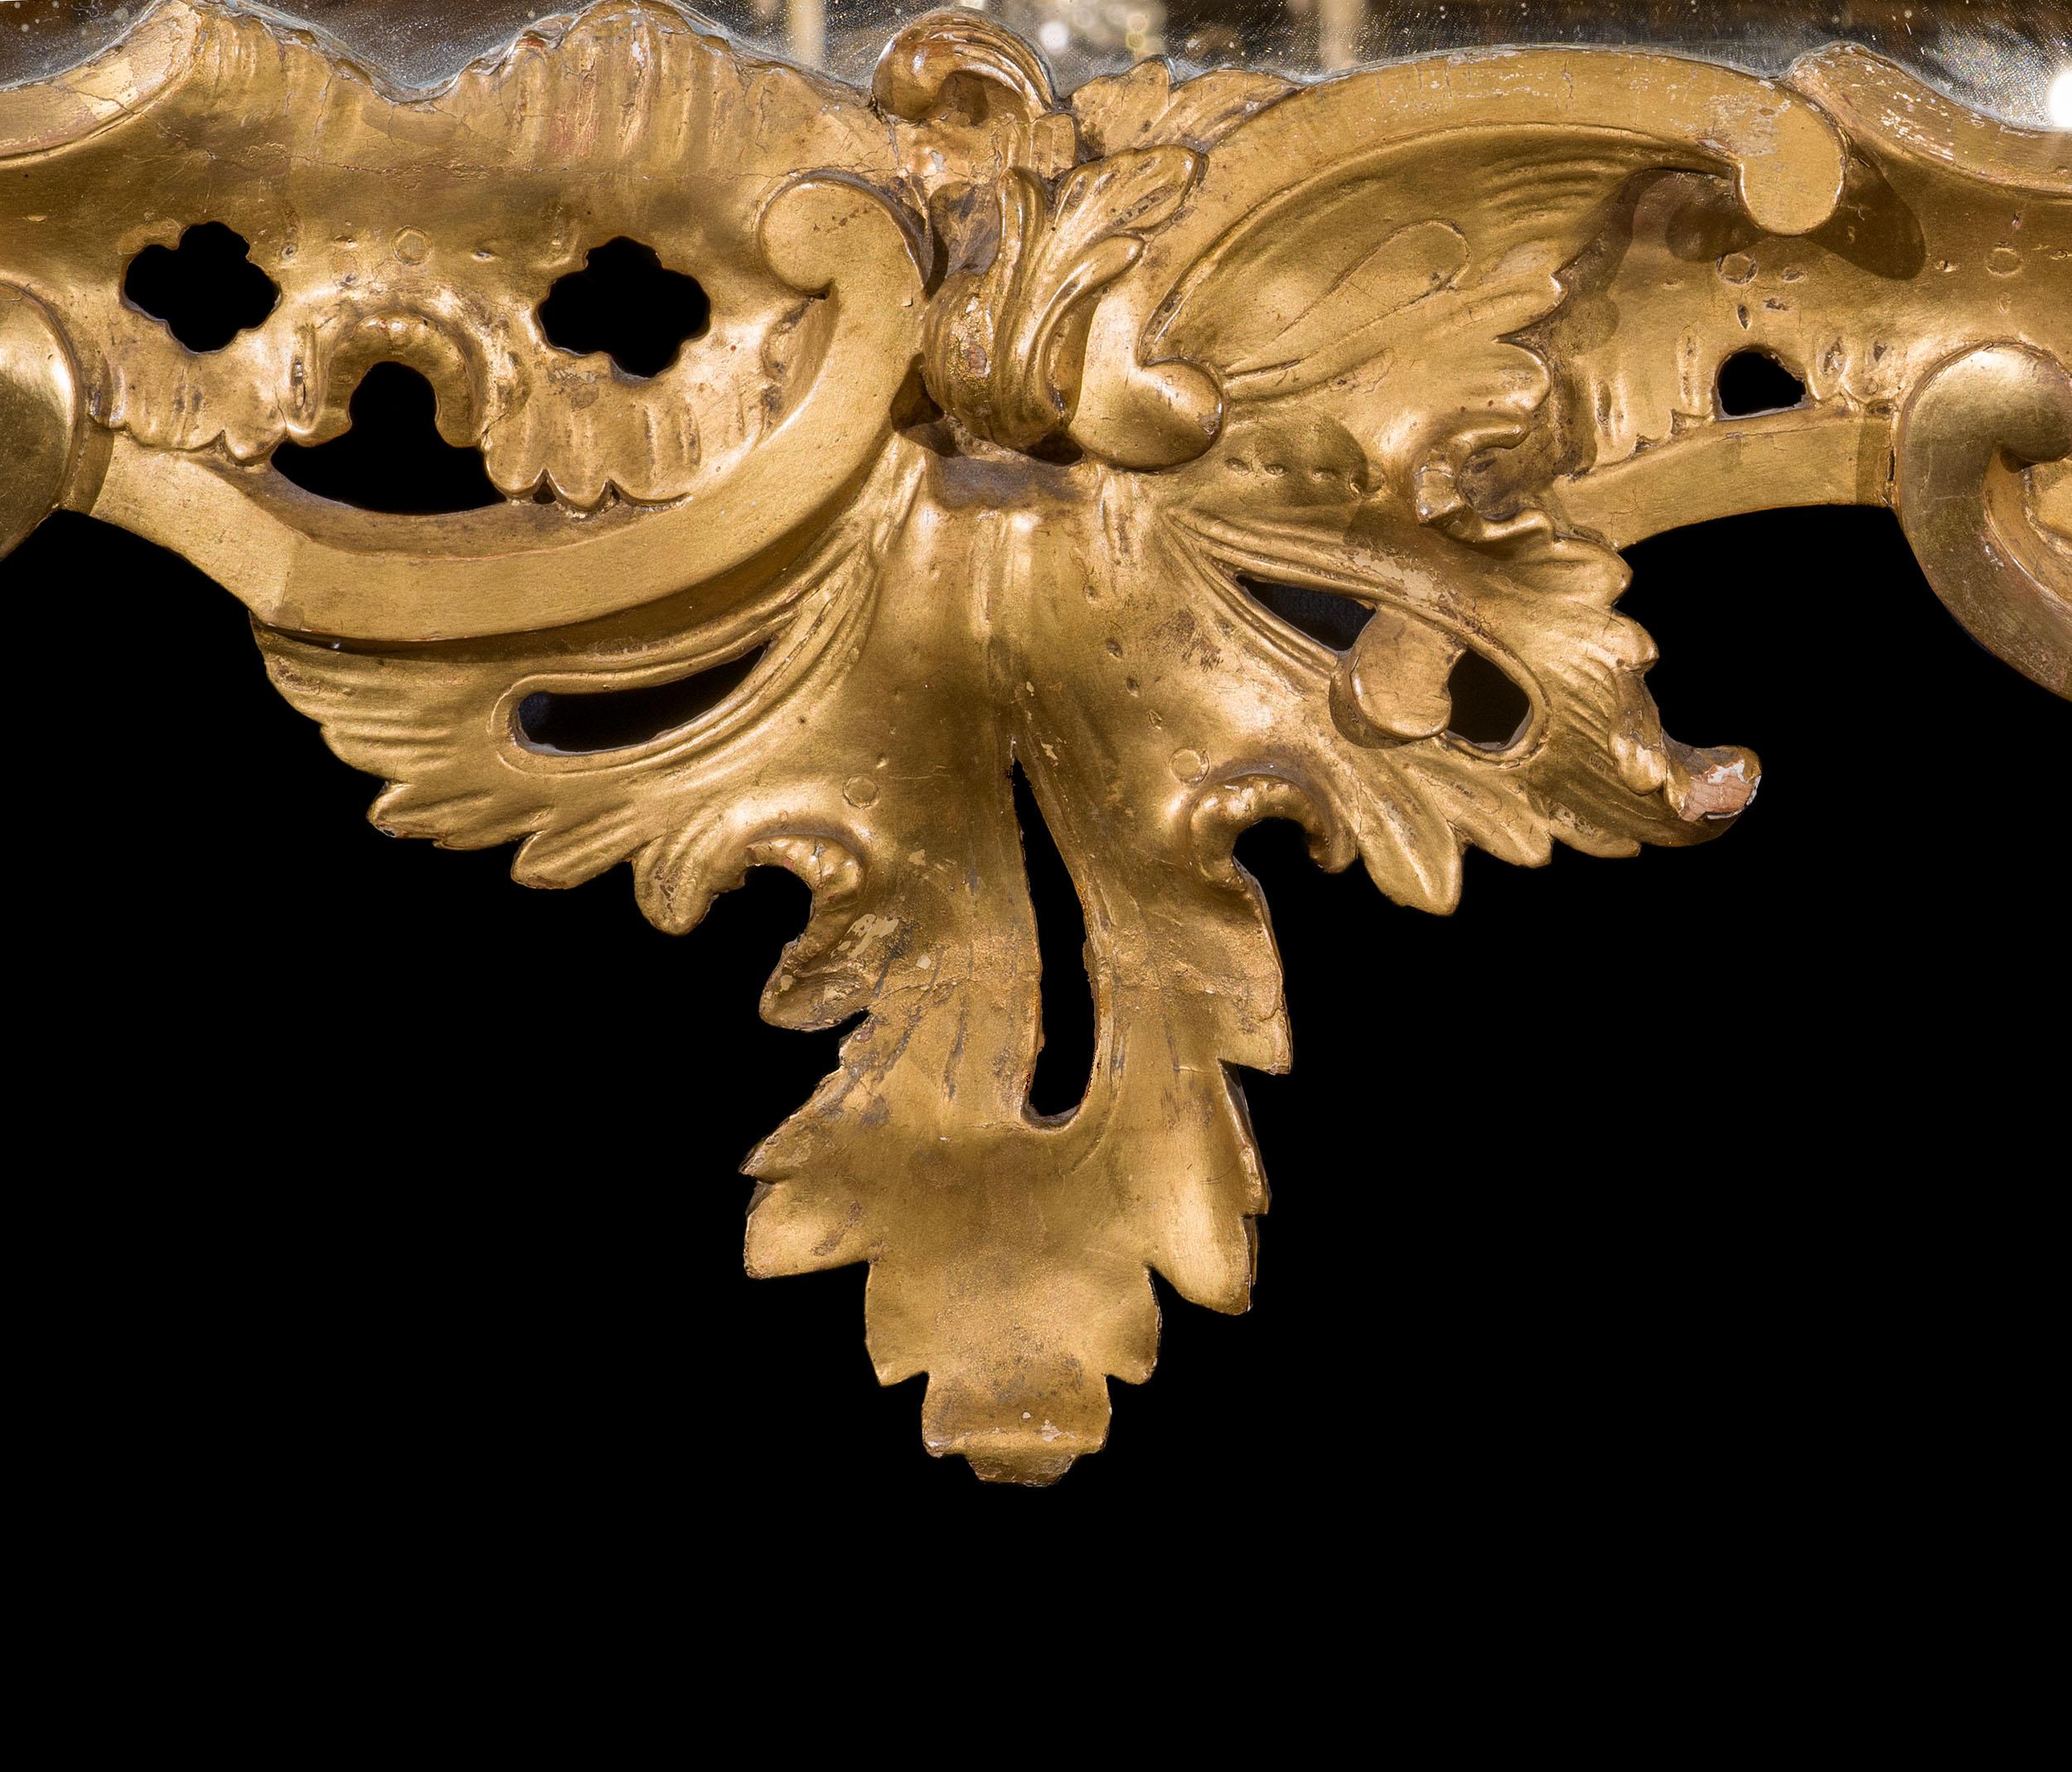 Ein sehr ungewöhnlicher George III Rokoko-Wandspiegel. Der vergoldete Rahmen ist mit einem wunderbar organischen Design geschnitzt, mit verschnörkelten Blättern, verschlungenen Blumen und Früchten, aber das ungewöhnlichste Detail sind die